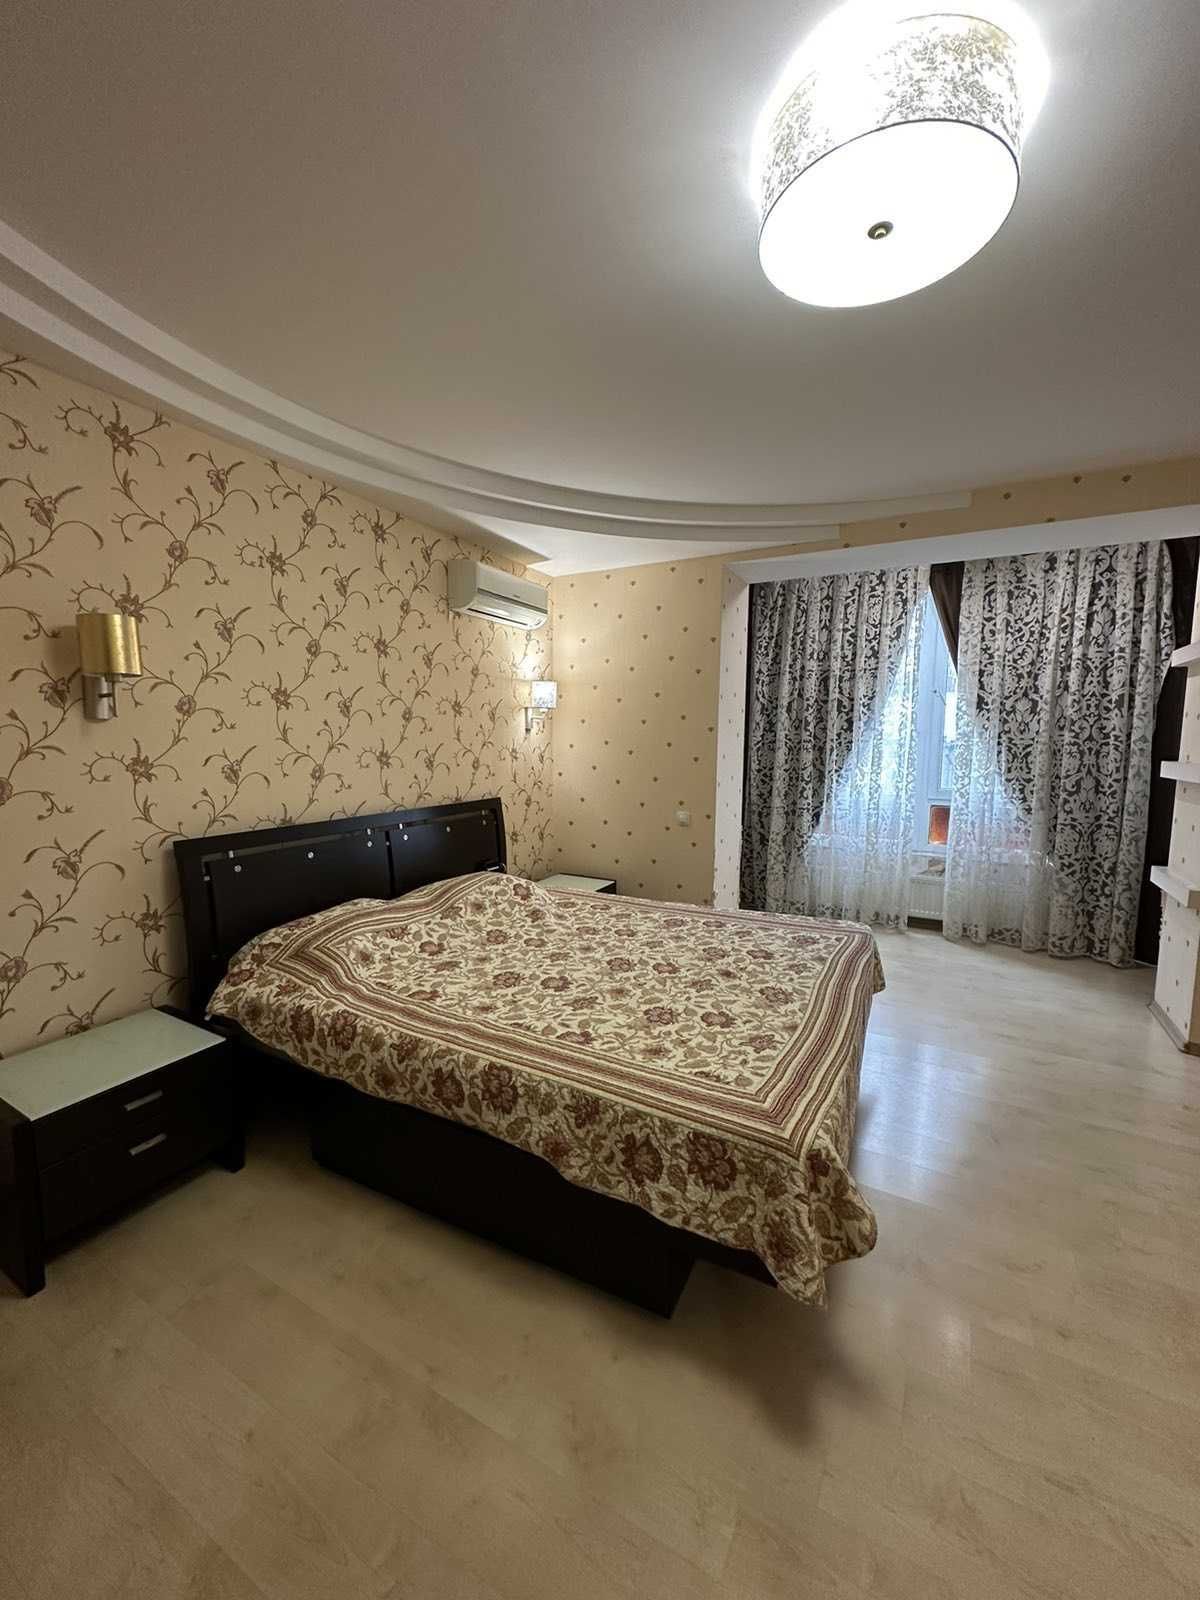 Продаётся трёхкомнатная квартира на среднем этаже по улице Нищинского.